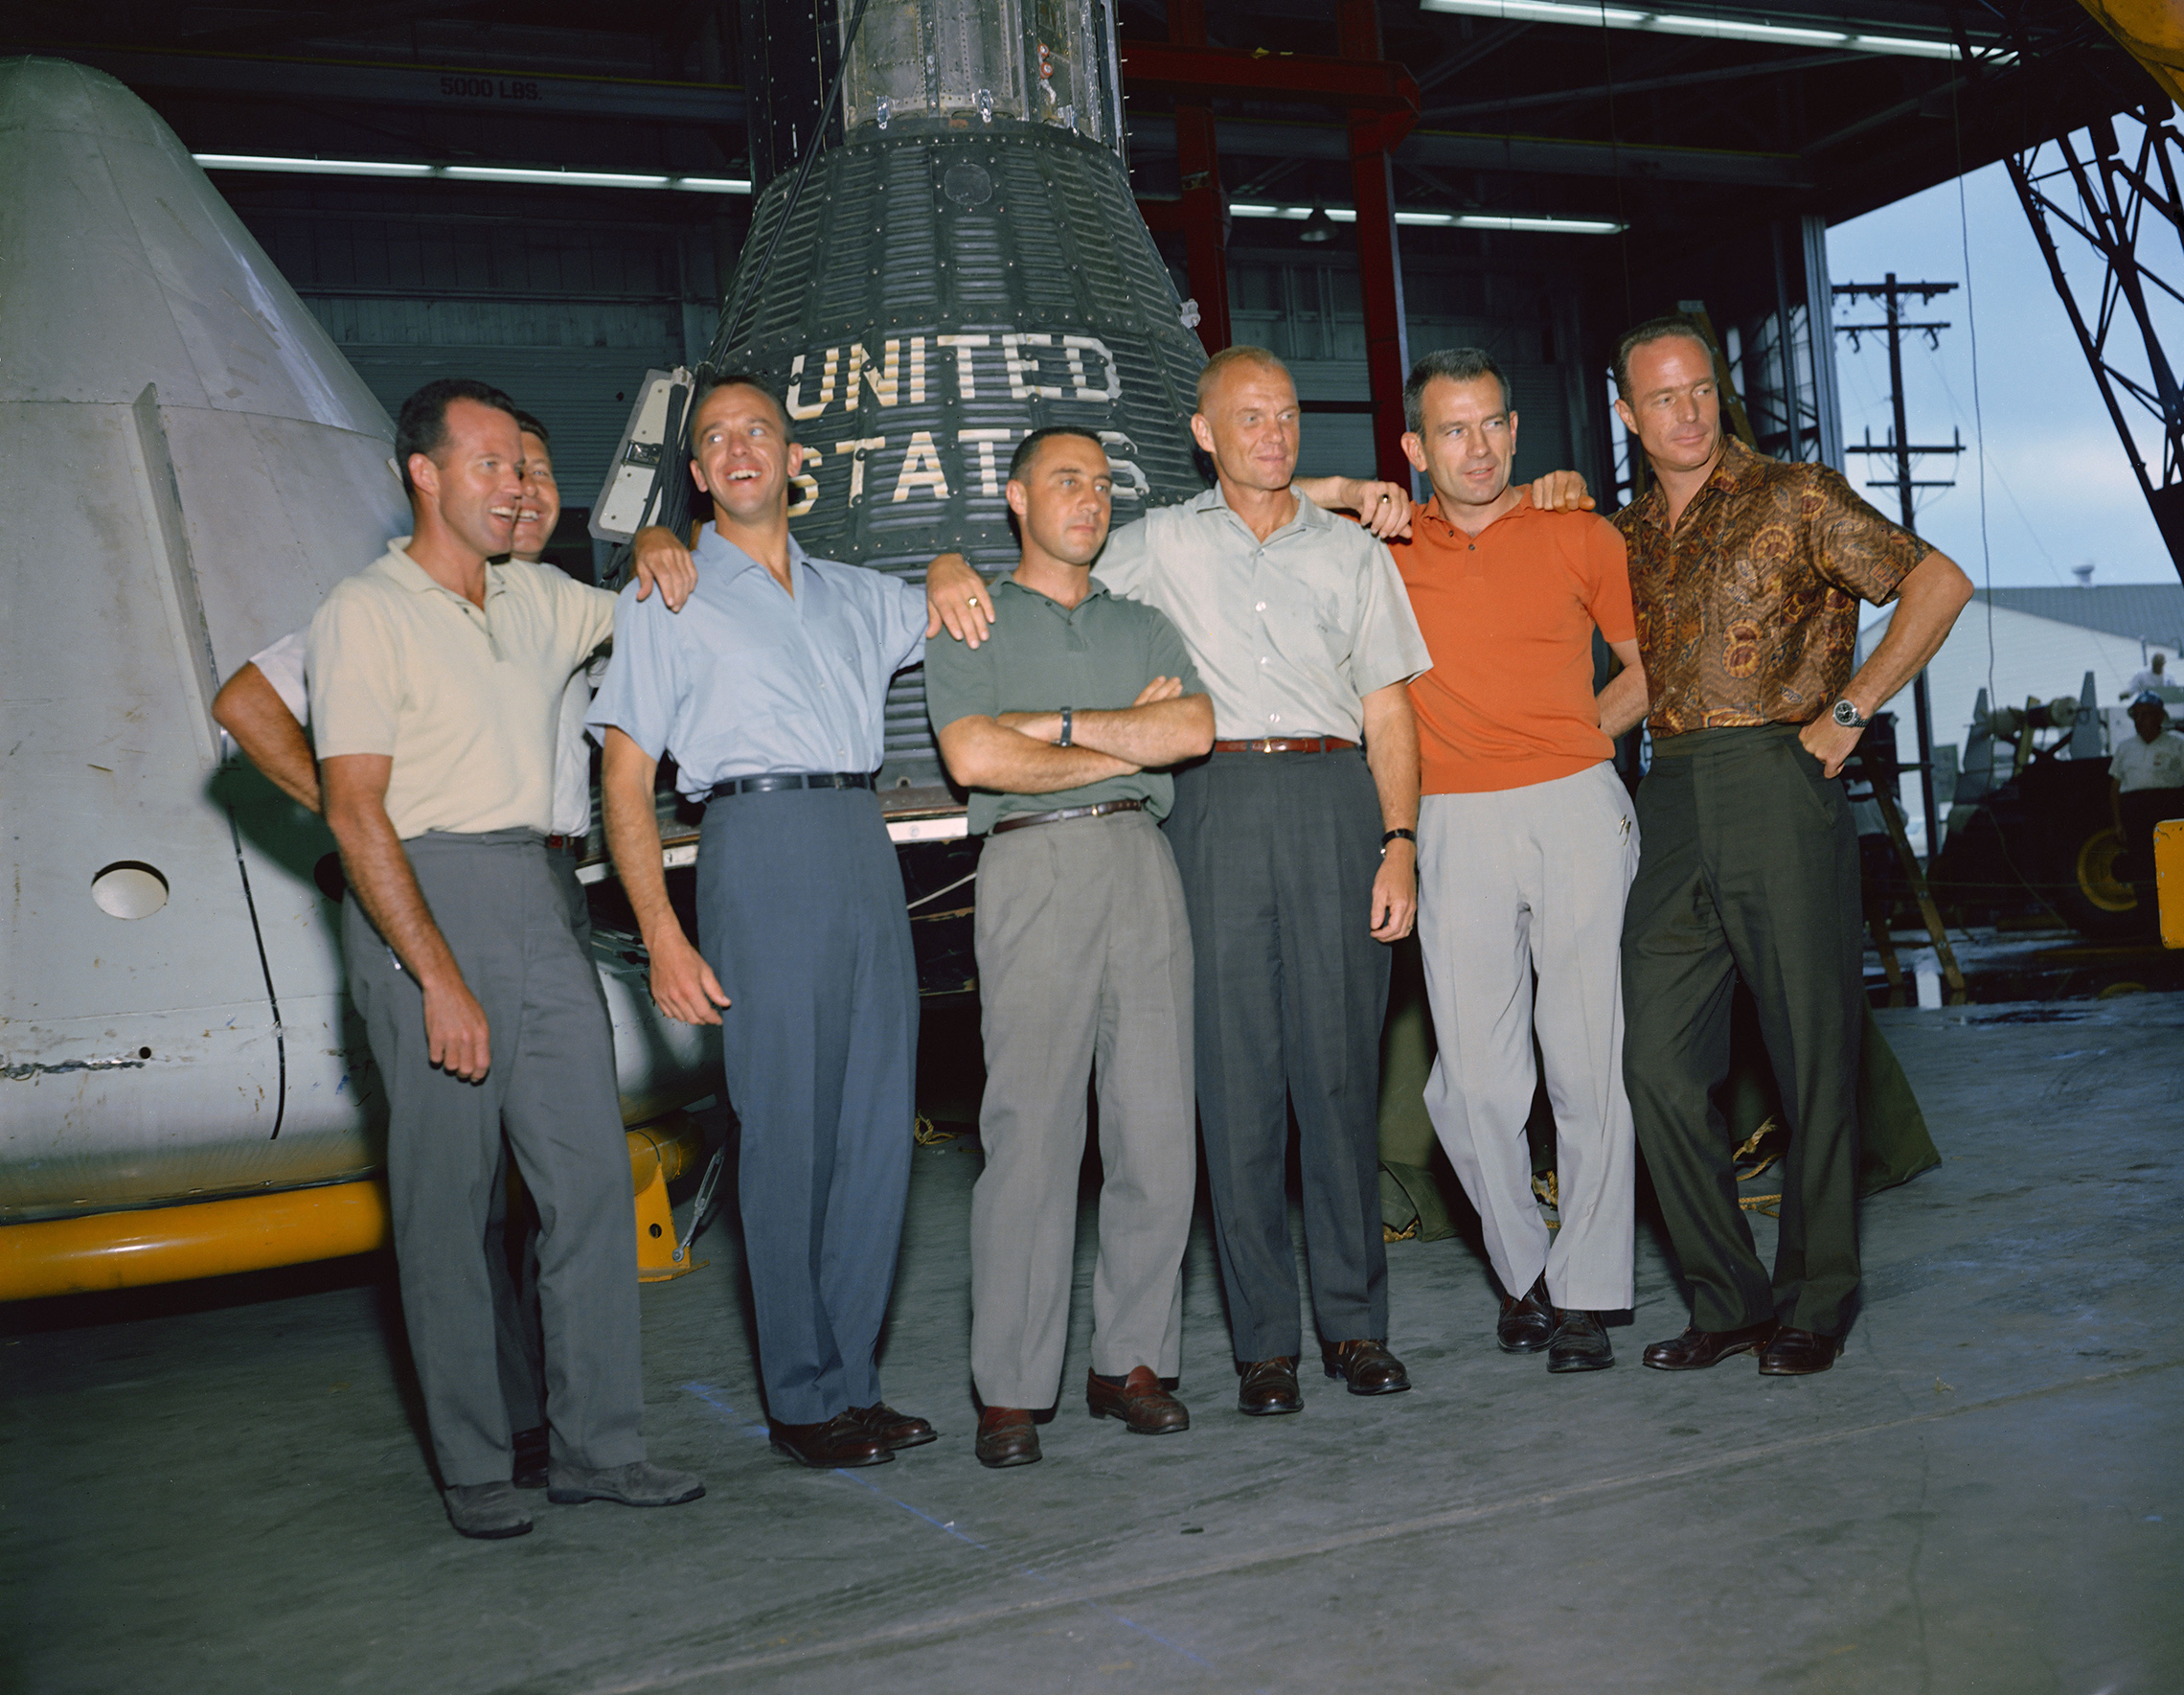 Le 9 avril 1959, le premier administrateur de la NASA, le Dr Keith Glennan, a annoncé les noms du premier groupe d'astronautes de l'agence lors d'une conférence de presse à Washington, D.C. Maintenant connus sous le nom de Sept originaux, ils comprenaient trois aviateurs navals, M. Scott Carpenter, Walter M. Schirra Jr. et Alan B. Shepard Il s'agit de trois pilotes de l'Armée de l'air, L. Gordon Cooper Jr., Virgil I. (Gus) Grissom et Donald K. (Deke) Slayton; avec l'aviateur du Corps des Marines John H. Glenn Jr., Cette photo de groupe des astronautes originaux de Mercury a été prise en juin 1963 au Centre des Vaisseaux Spatiaux Habités (MSC), aujourd'hui Centre spatial Johnson, à Houston, au Texas. Les astronautes sont, de gauche à droite : Cooper, Schirra, Shepard, Grissom, Glenn, Slayton et Carpenter. Le projet Mercury est devenu la première entreprise majeure de la NASA. Les objectifs du programme étaient de placer un vaisseau spatial à dimension humaine en orbite autour de la Terre, d'observer les performances des astronautes dans de telles conditions et de récupérer en toute sécurité l'astronaute et le vaisseau spatial. Les vols Mercury ont prouvé que les humains pouvaient vivre et travailler dans l'espace, et ont ouvert la voie aux programmes Gemini et Apollo ainsi qu'à tous les autres vols spatiaux humains. (NASA)'s first administrator, Dr. Keith Glennan, announced the names of the agency's first group of astronauts at a news conference in Washington, D.C. Now known as the "Original Seven," they included three Naval aviators, M. Scott Carpenter, Walter M. Schirra Jr., and Alan B. Shepard Jr.; three Air Force pilots, L. Gordon Cooper Jr., Virgil I. (Gus) Grissom, and Donald K. (Deke) Slayton; along with Marine Corps aviator John H. Glenn Jr. This group photo of the original Mercury astronauts was taken in June 1963 at the Manned Spacecraft Center (MSC), now Johnson Space Center, in Houston, Texas. The astronauts are, left to right: Cooper, Schirra, Shepard, Grissom, Glenn, Slayton and Carpenter. Project Mercury became NASA's first major undertaking. The objectives of the program were to place a human-rated spacecraft into orbit around Earth, observe the astronauts' performance in such conditions and safely recover the astronaut and the spacecraft. The Mercury flights proved that humans could live and work in space, and paved the way for the Gemini and Apollo programs as well as for all further human spaceflight. (NASA)